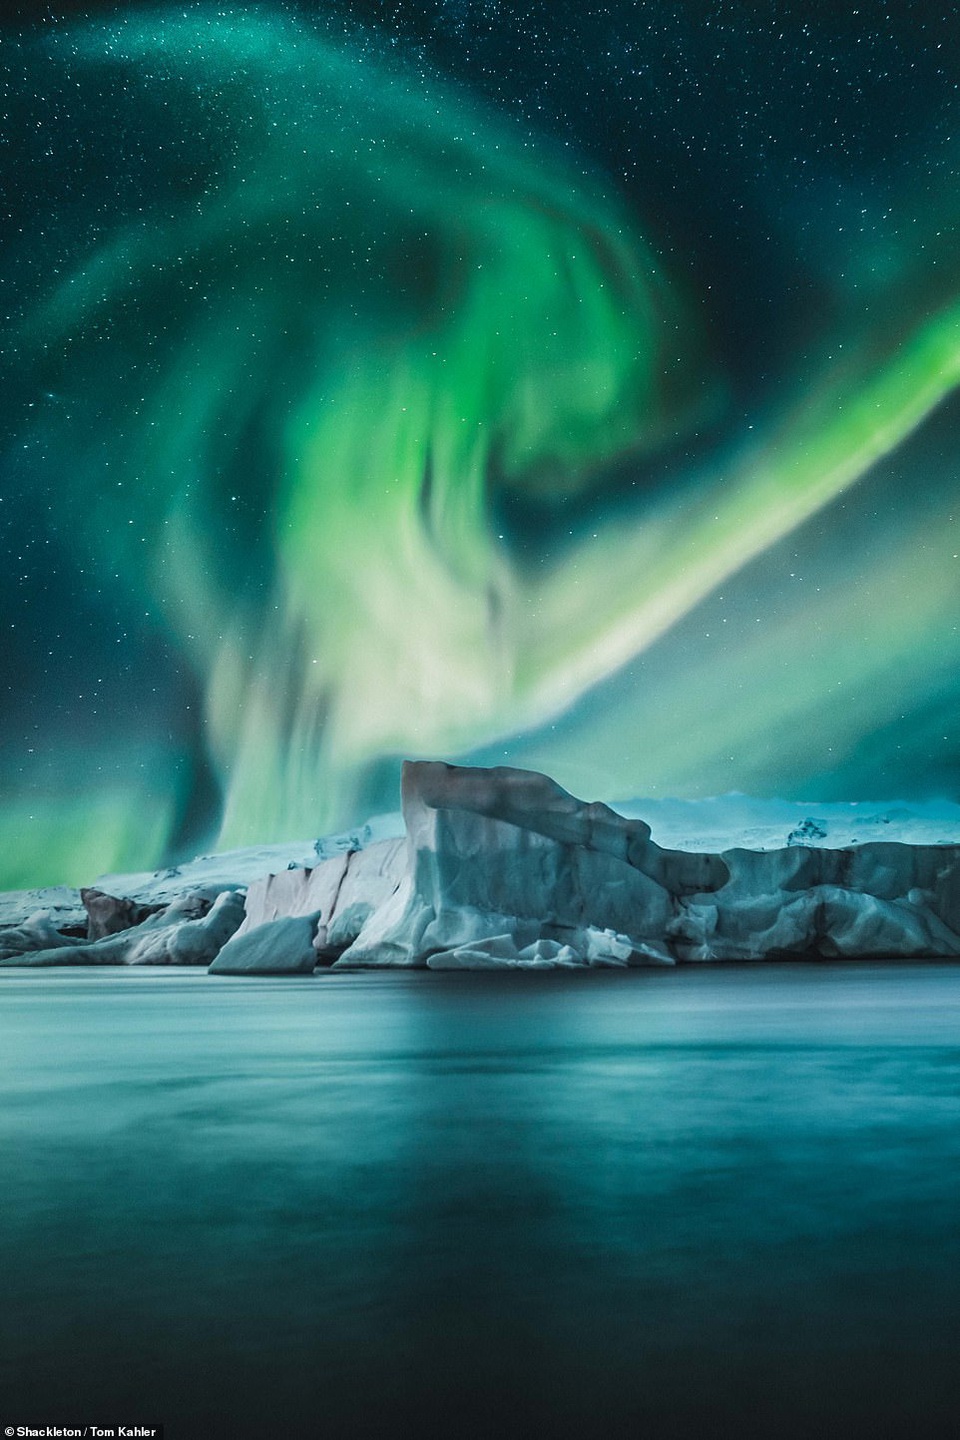 Cực quang tại một đầm phá sông băng ở Iceland. Đây là một trong những nơi săn Bắc cực quang đẹp nhất thế giới.